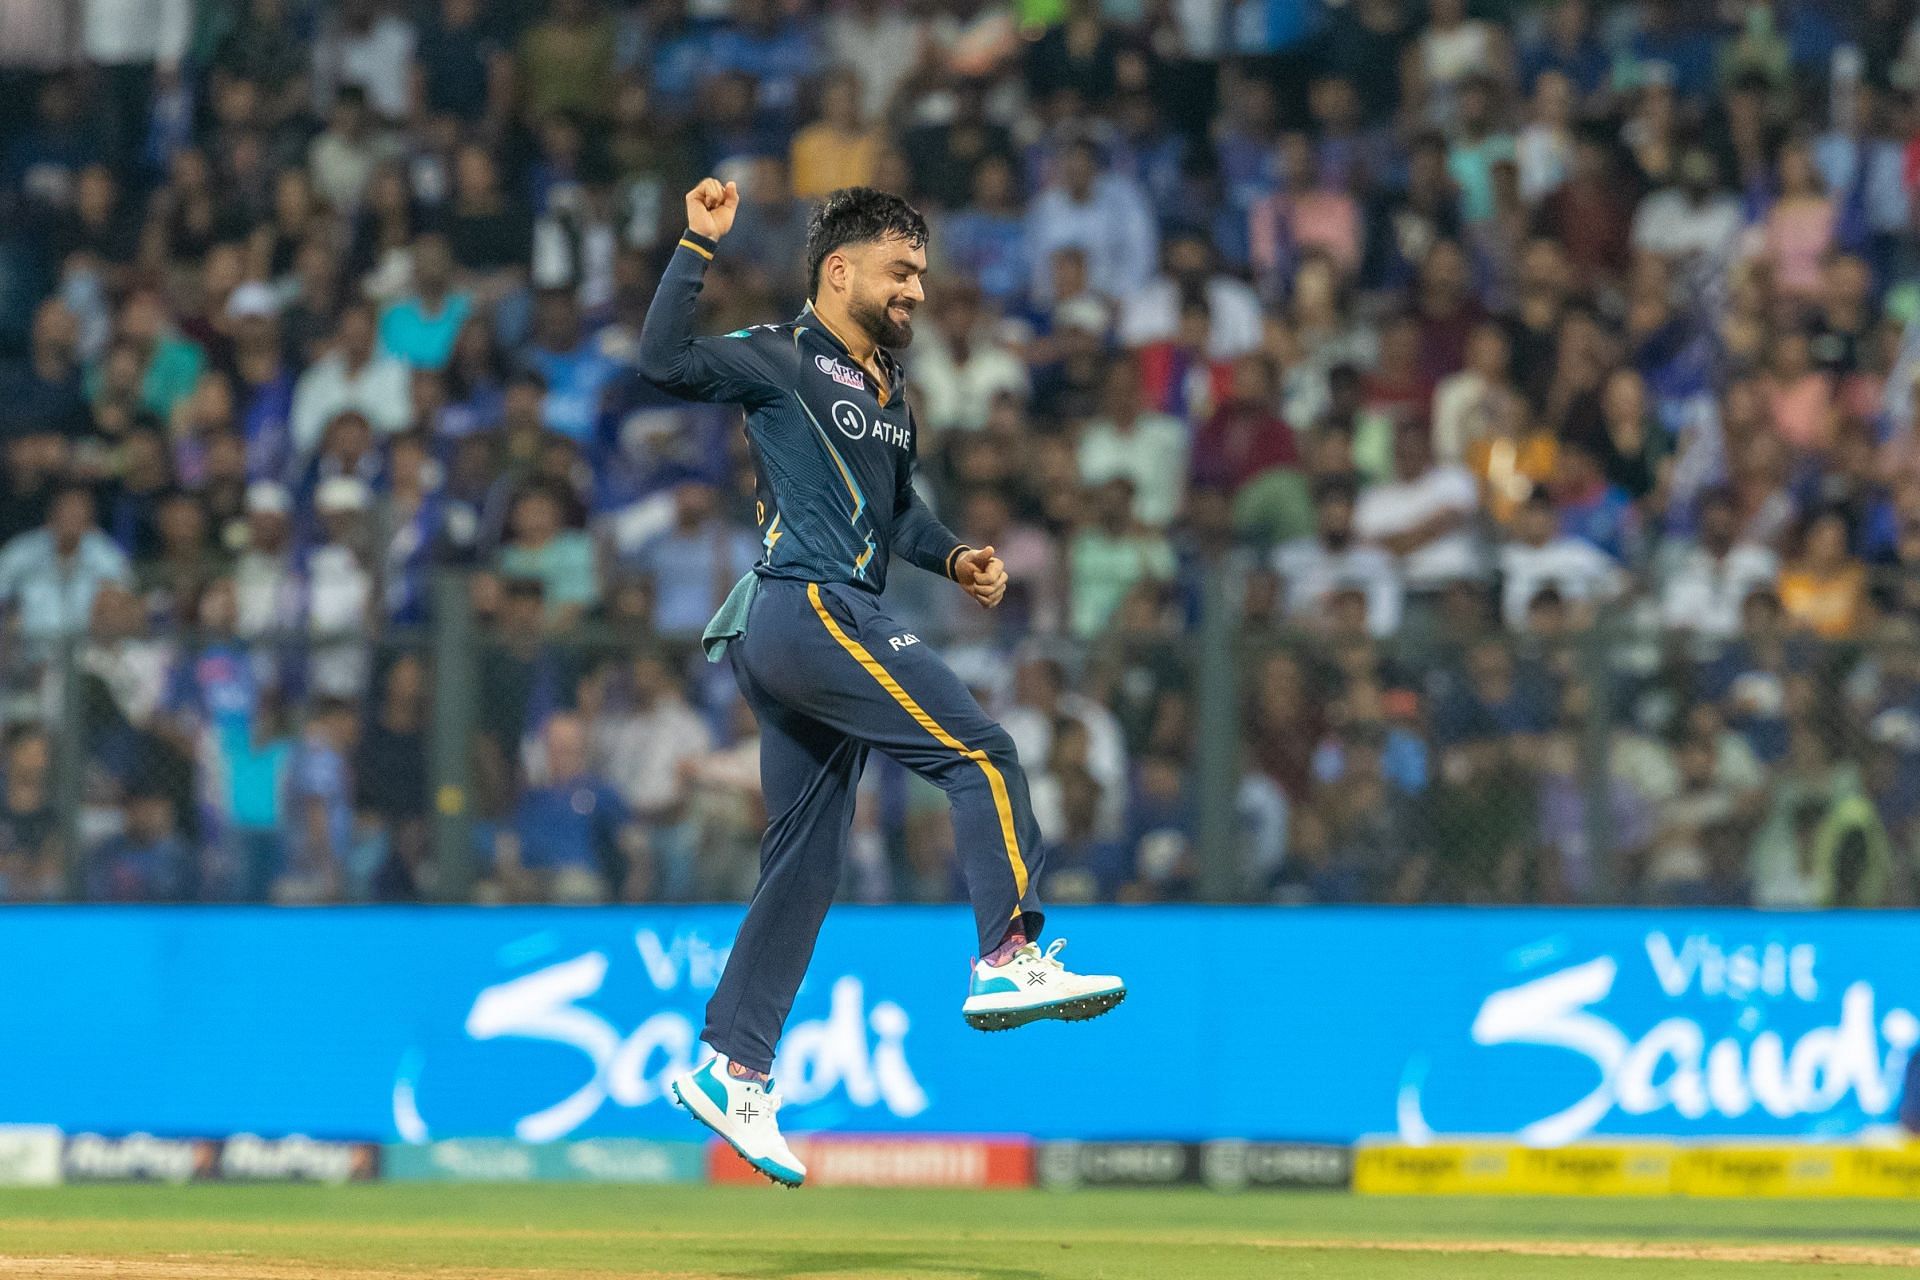 Rashid Khan celebrating a wicket (Image Courtesy: Twitter/IPL)